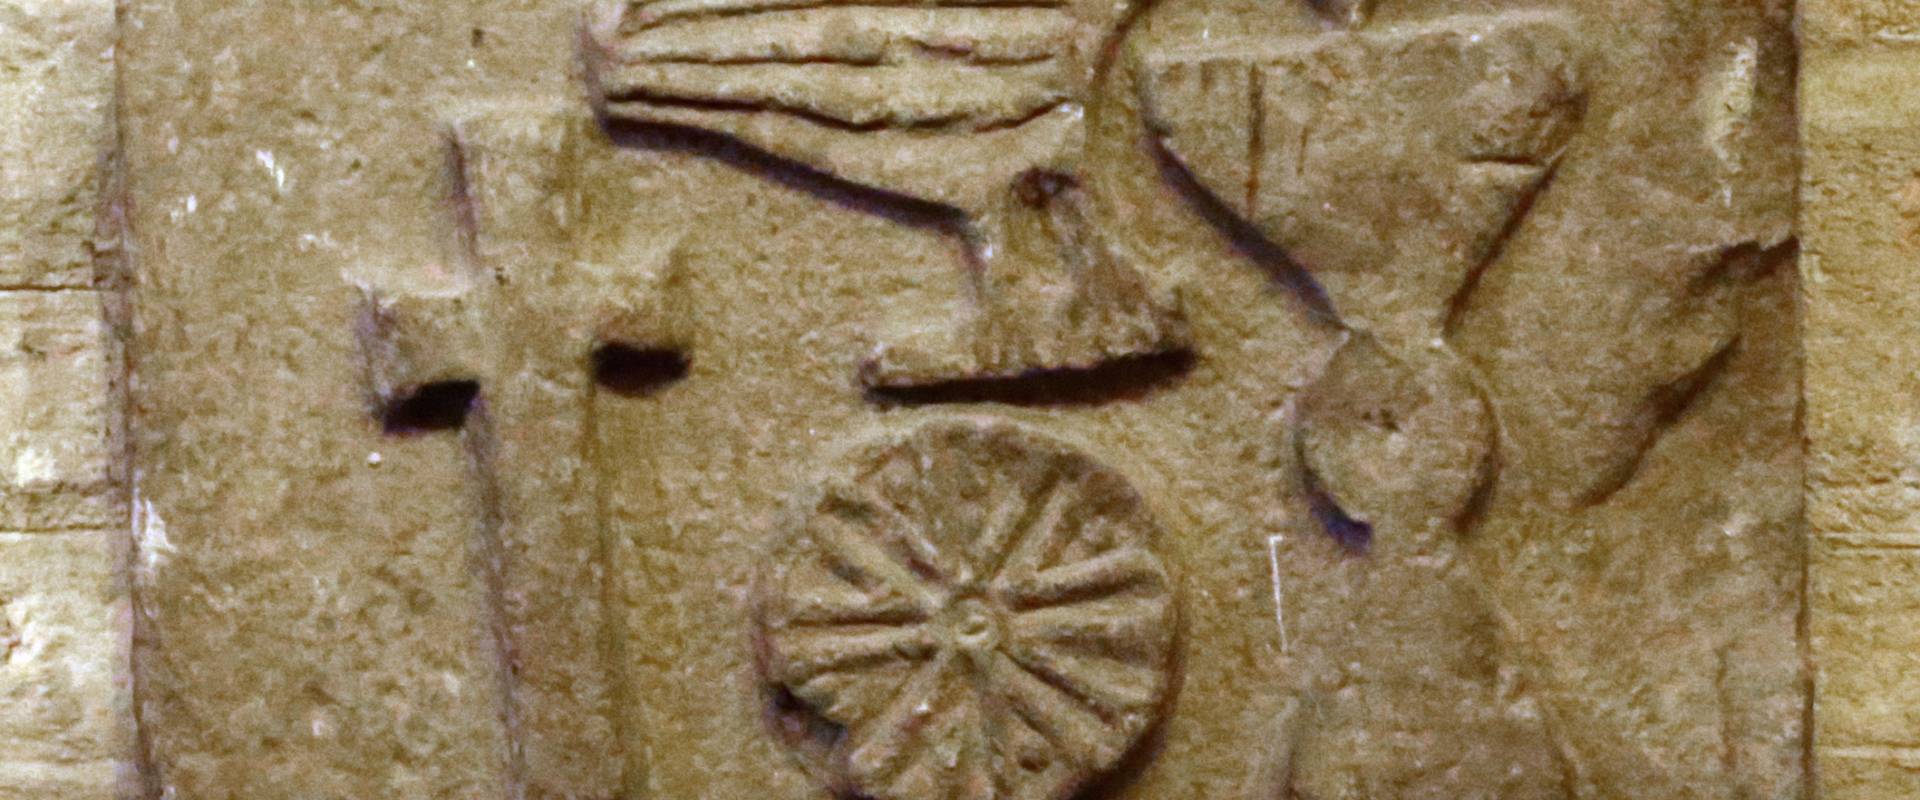 Forlì, san mercuriale, interno, rilievo bizantino con pellicano, calice eucaristico, ostia e croce latina foto di Sailko